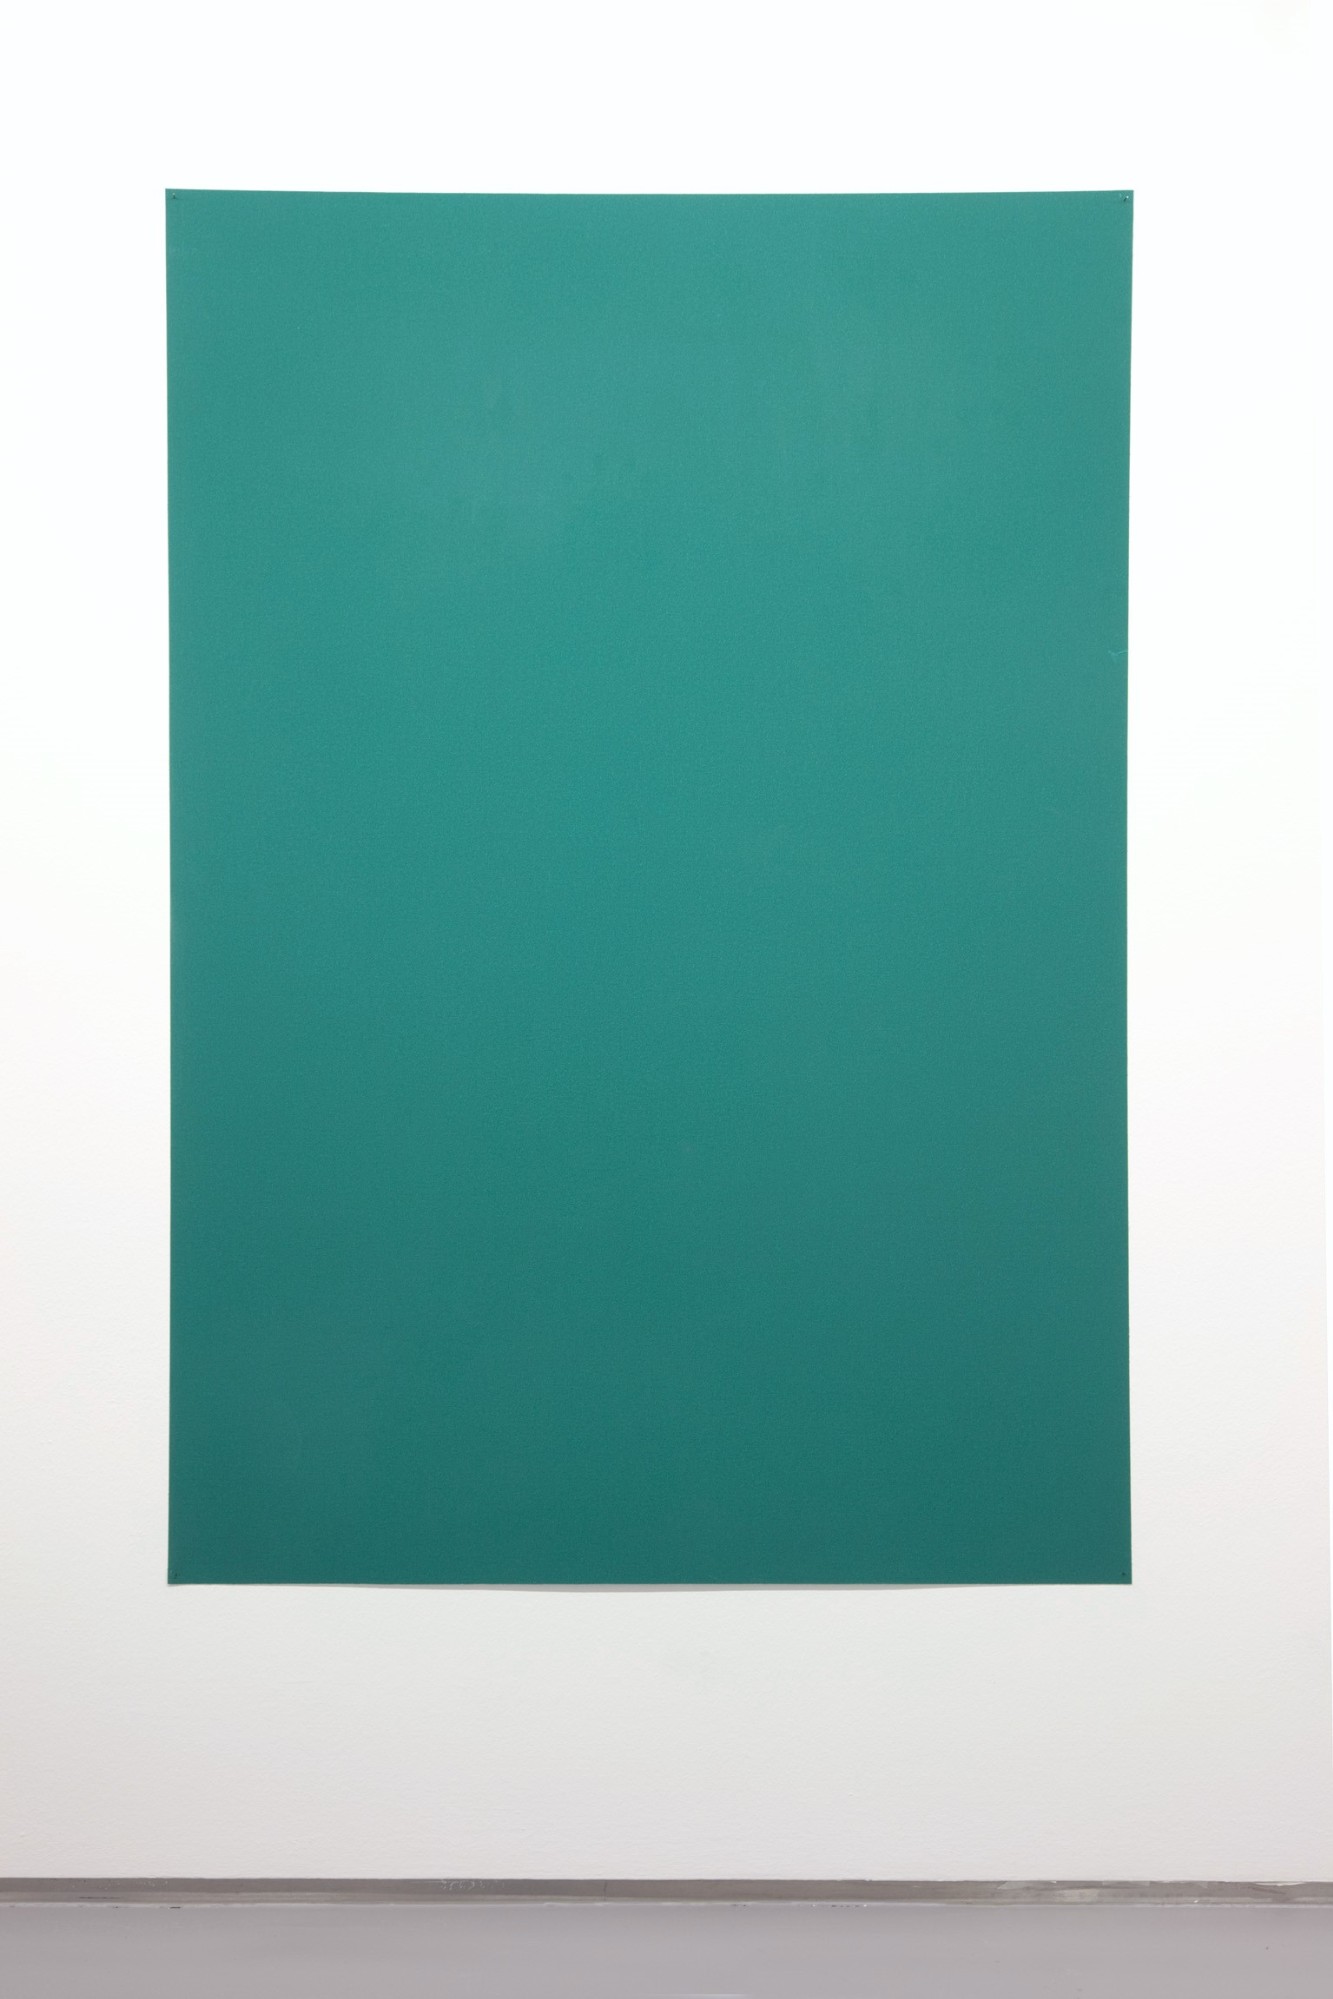 Tobias Hantmann, Pistill der Iris, grün, fein, 2011, sandpaper, 191 x 132 cm